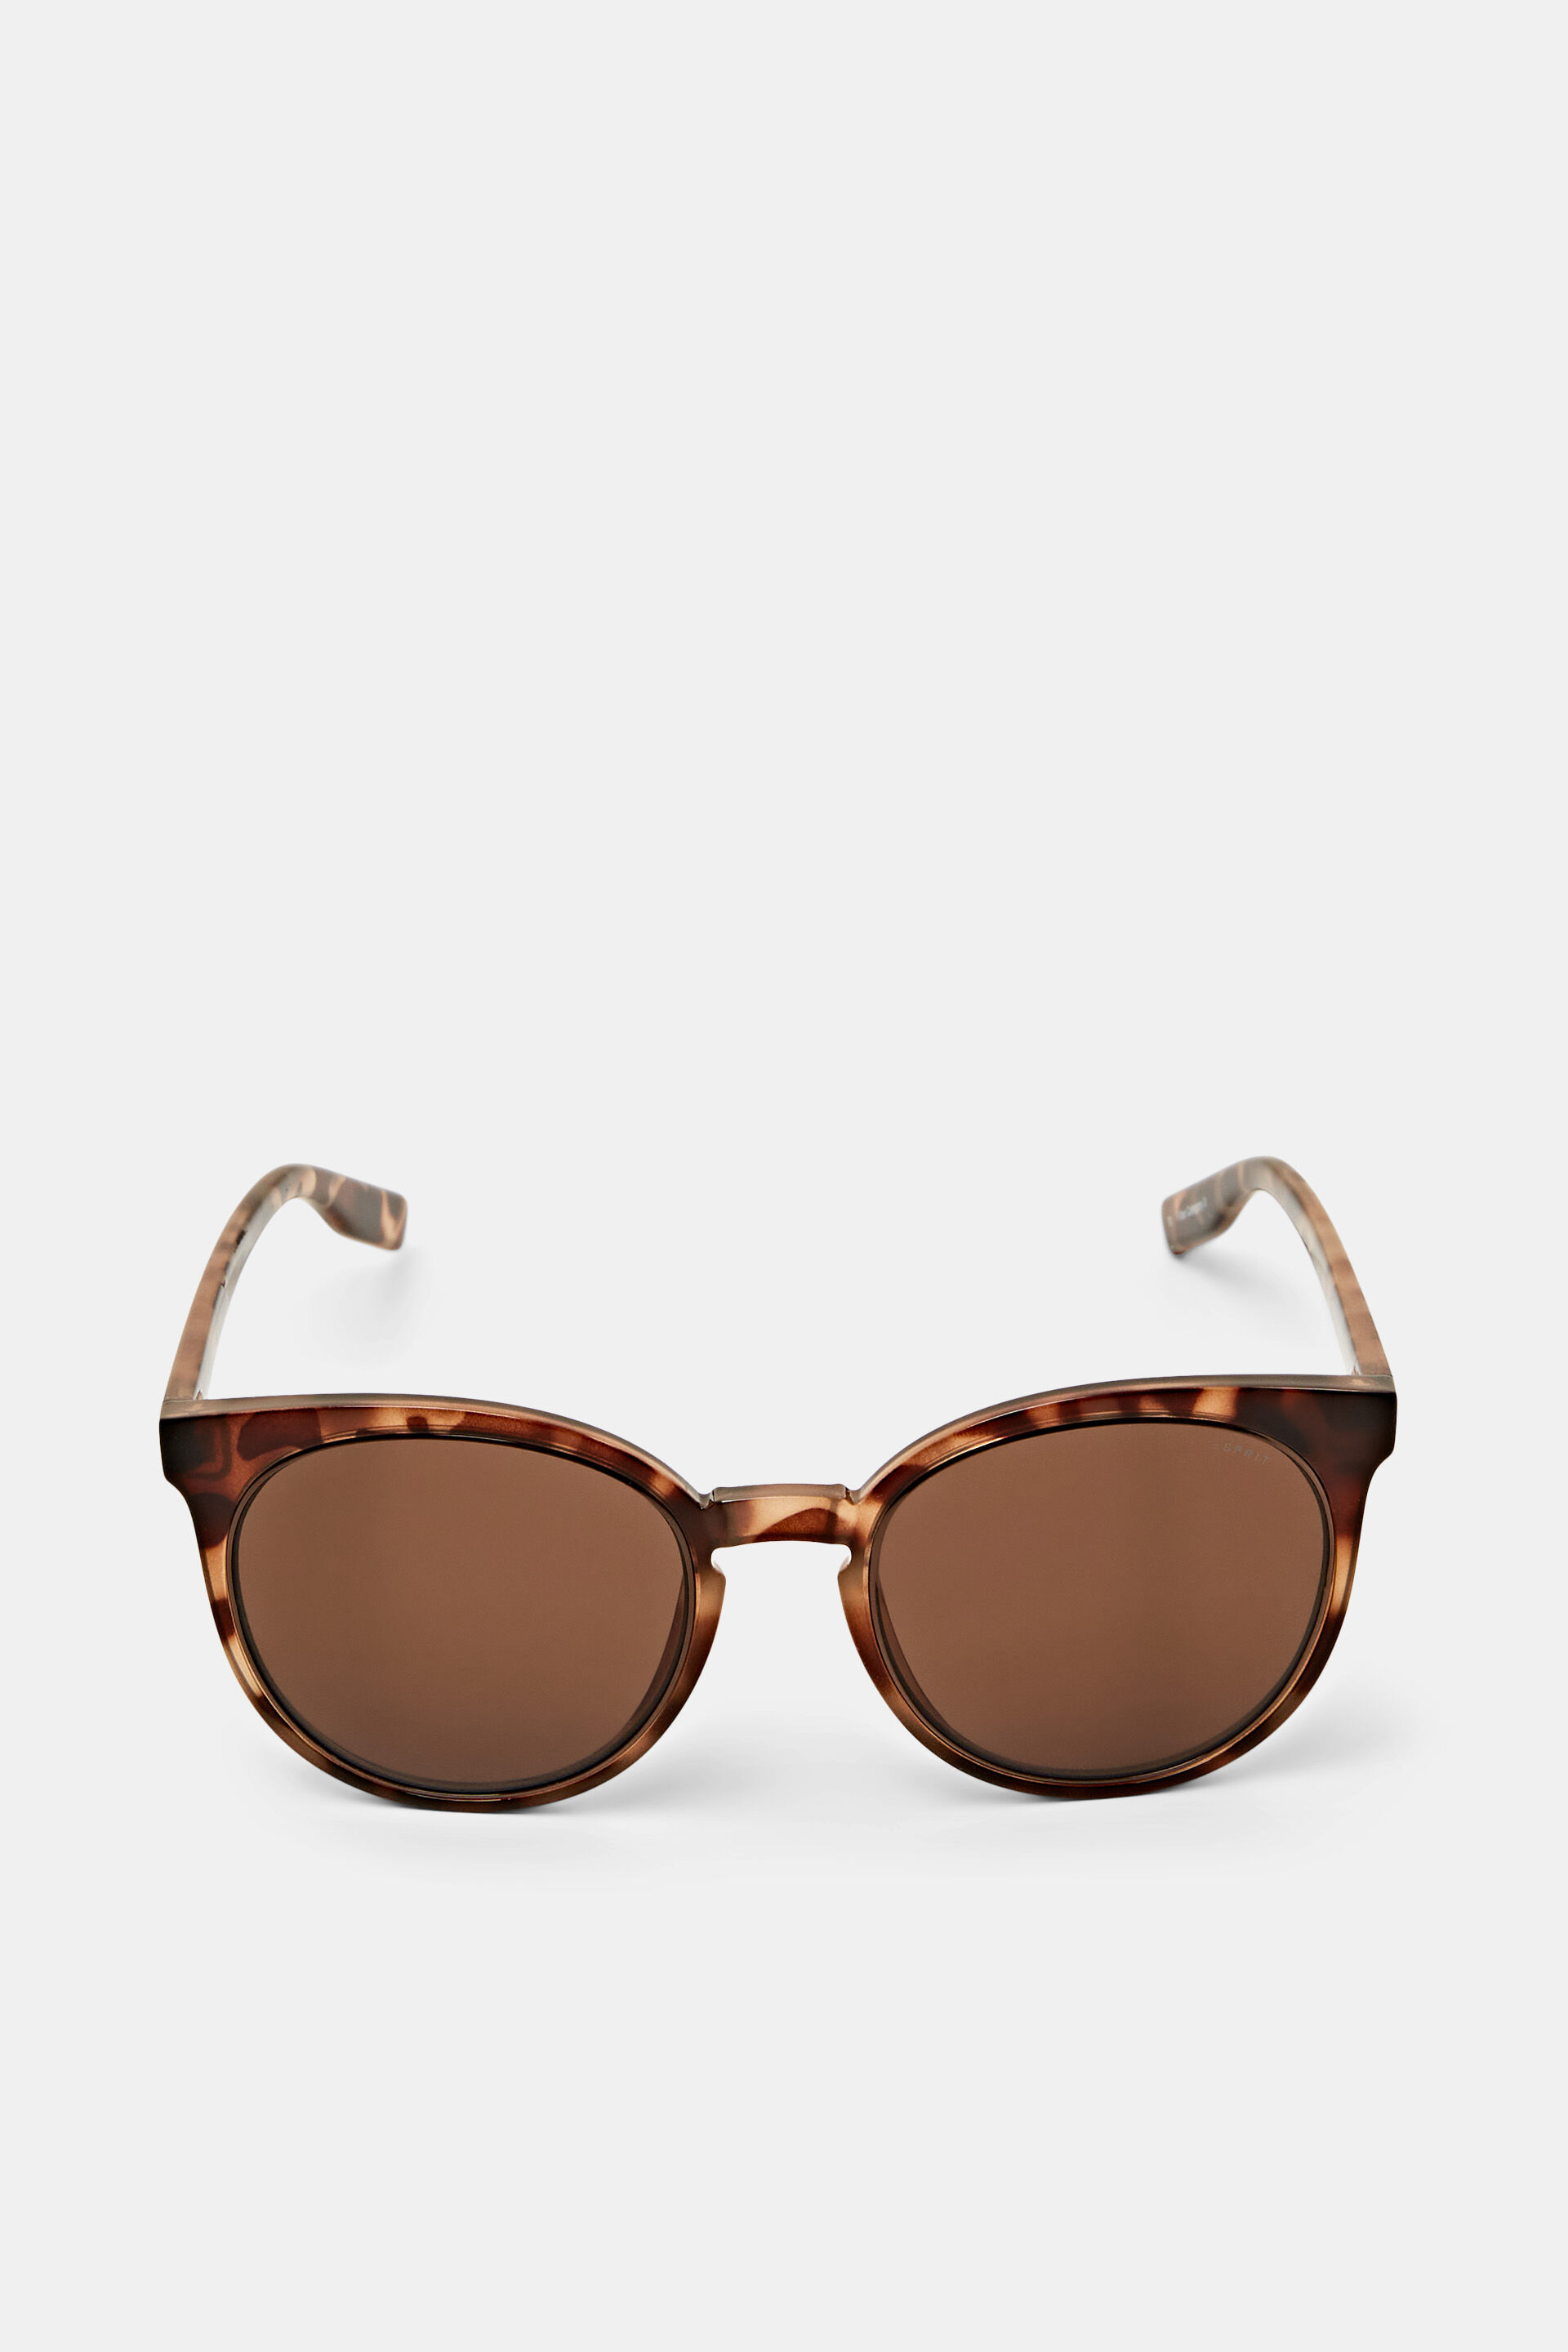 Esprit framed sunglasses Round statement